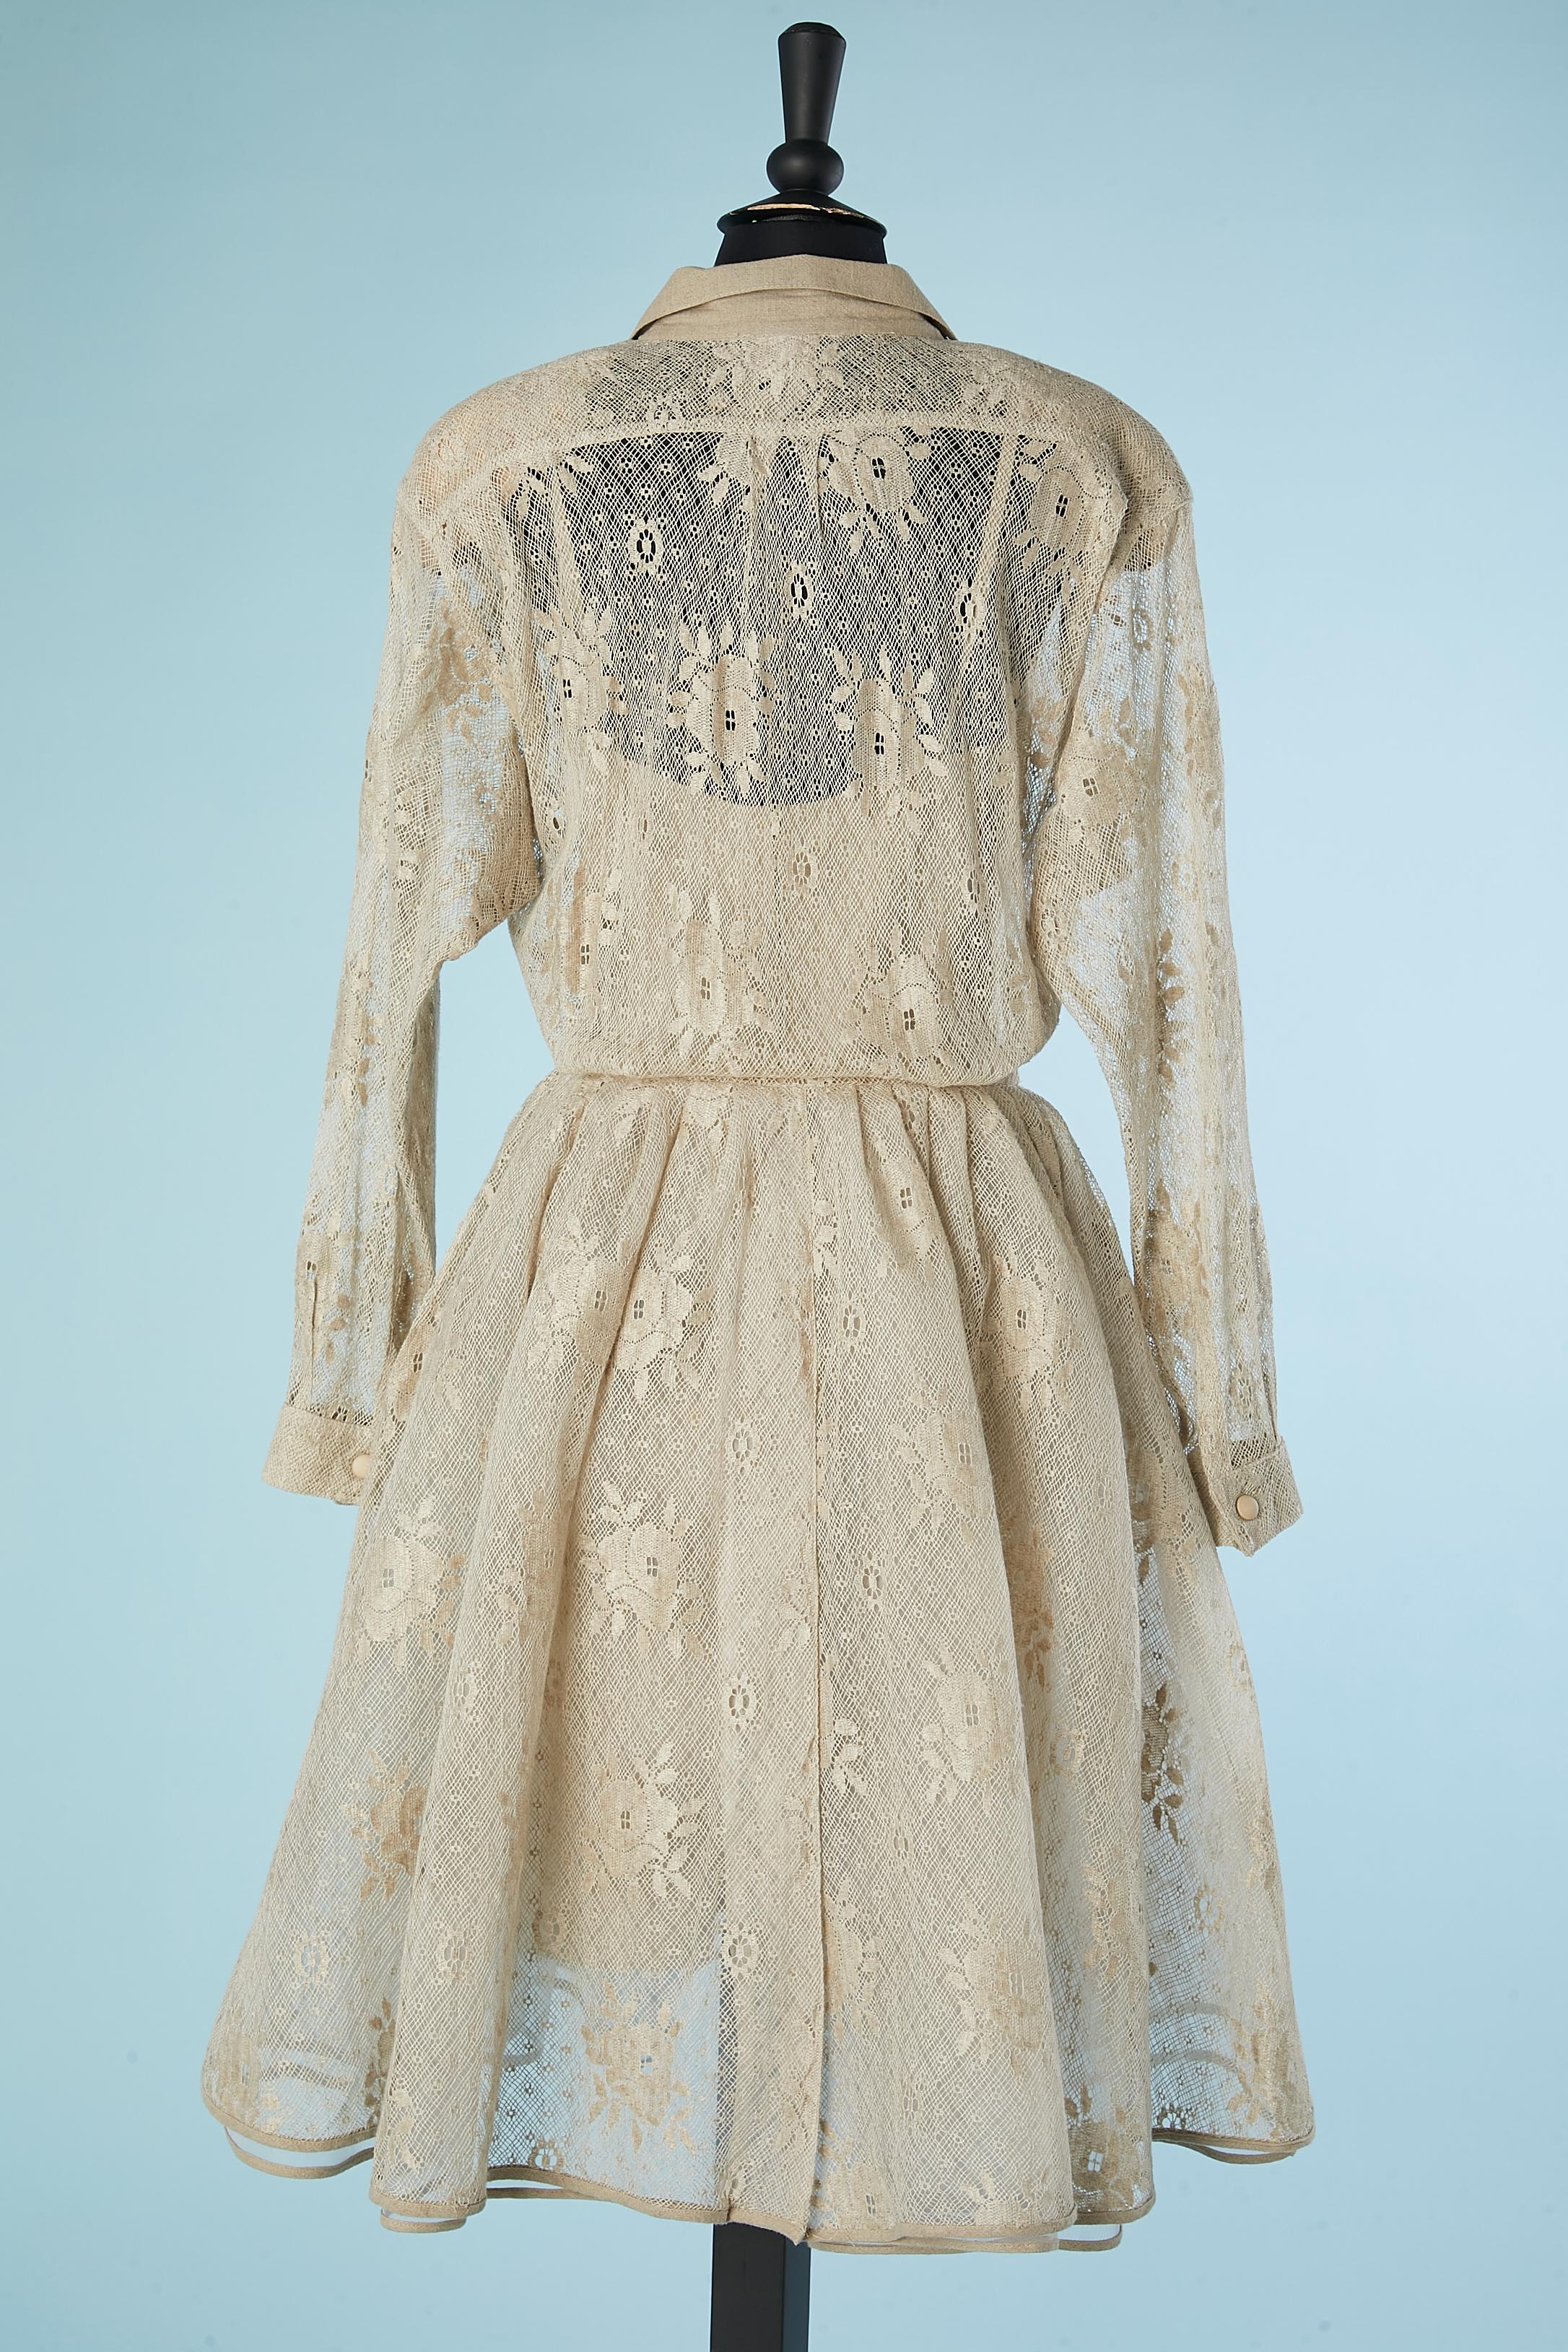 Linen lace dress with linen slip-dress underneath Krizia  For Sale 1